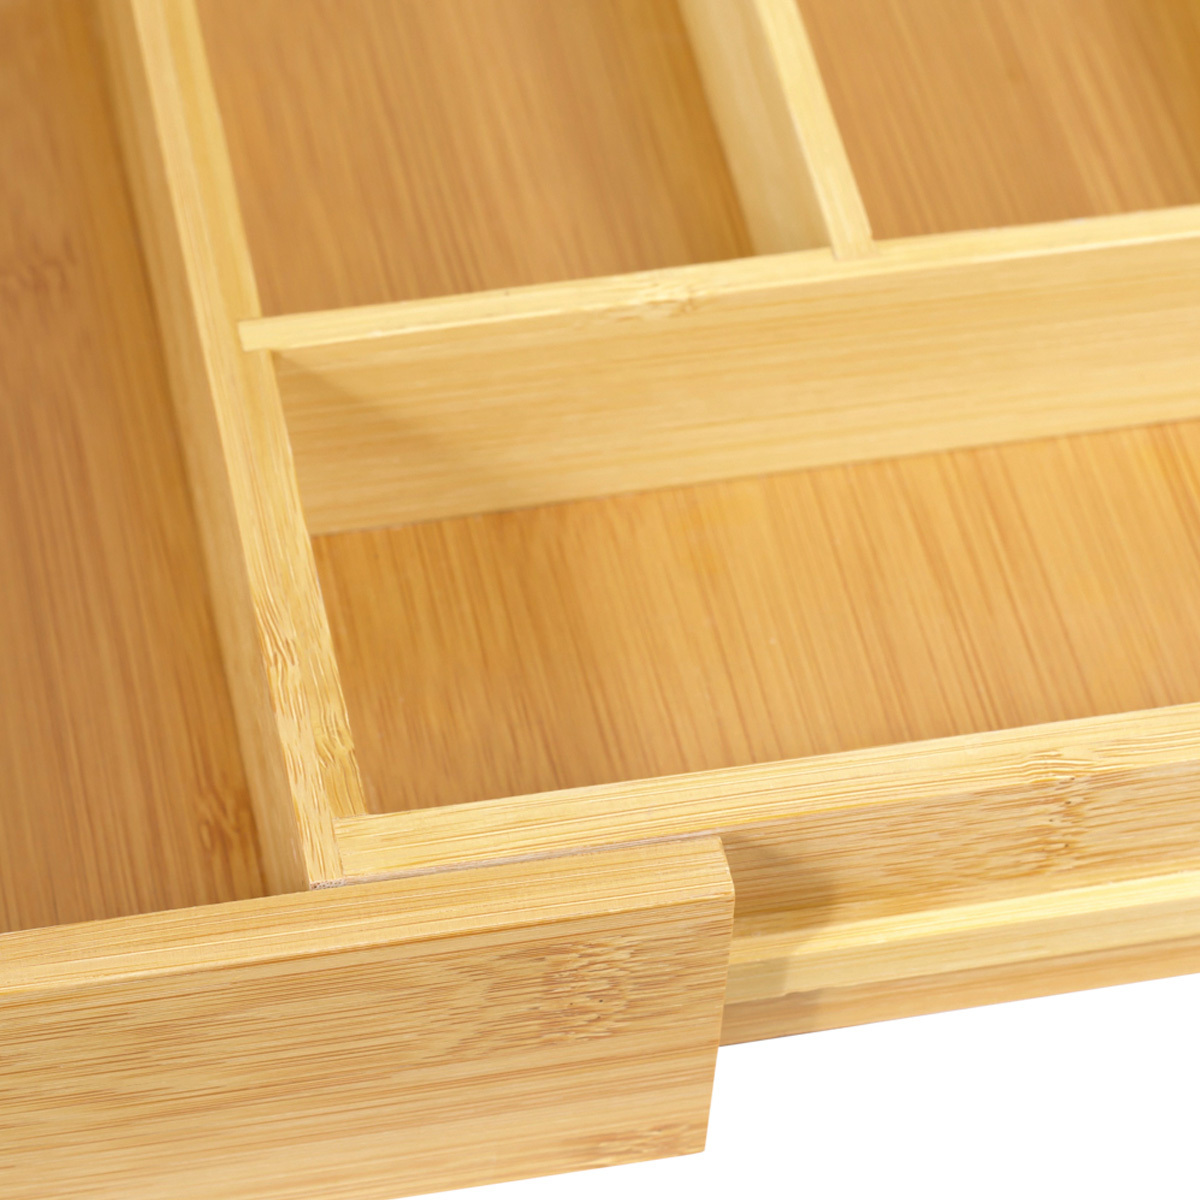 Organizador de cubiertos de bamboo extensible